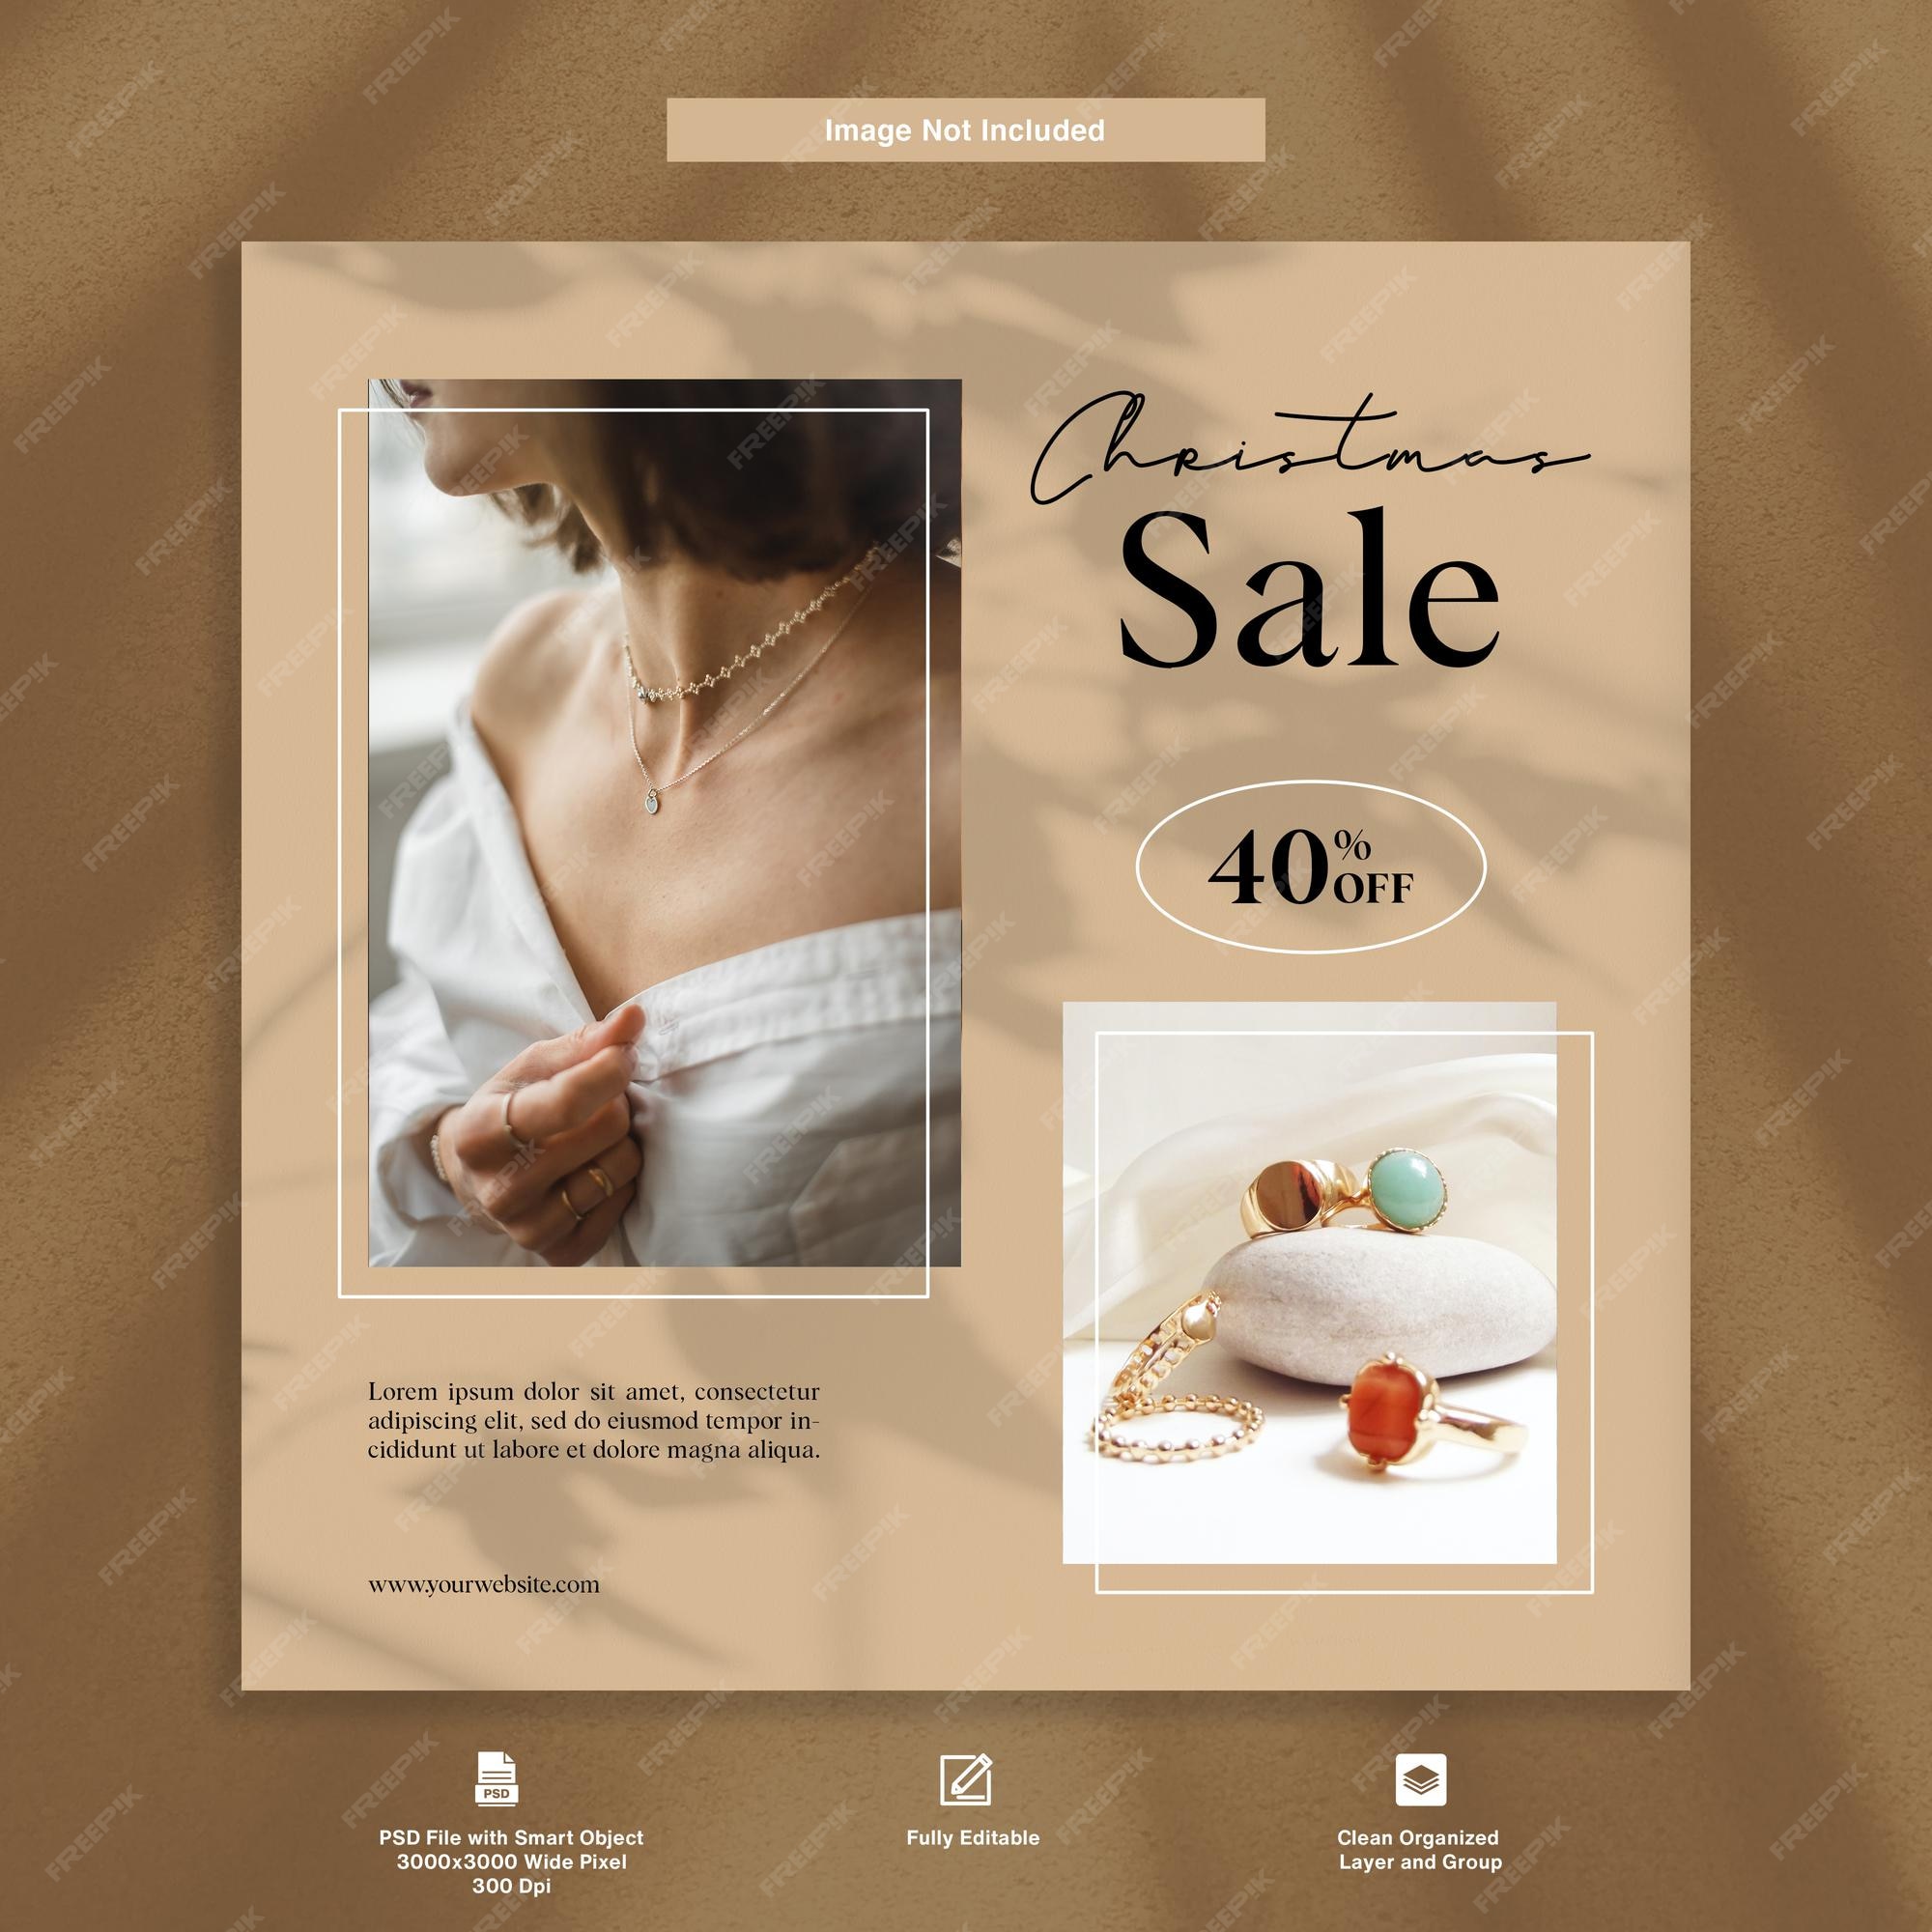 Venta navideña de joyas y accesorios para mujeres, oferta de elegantes plantilla de publicación de instagram | Archivo PSD Premium